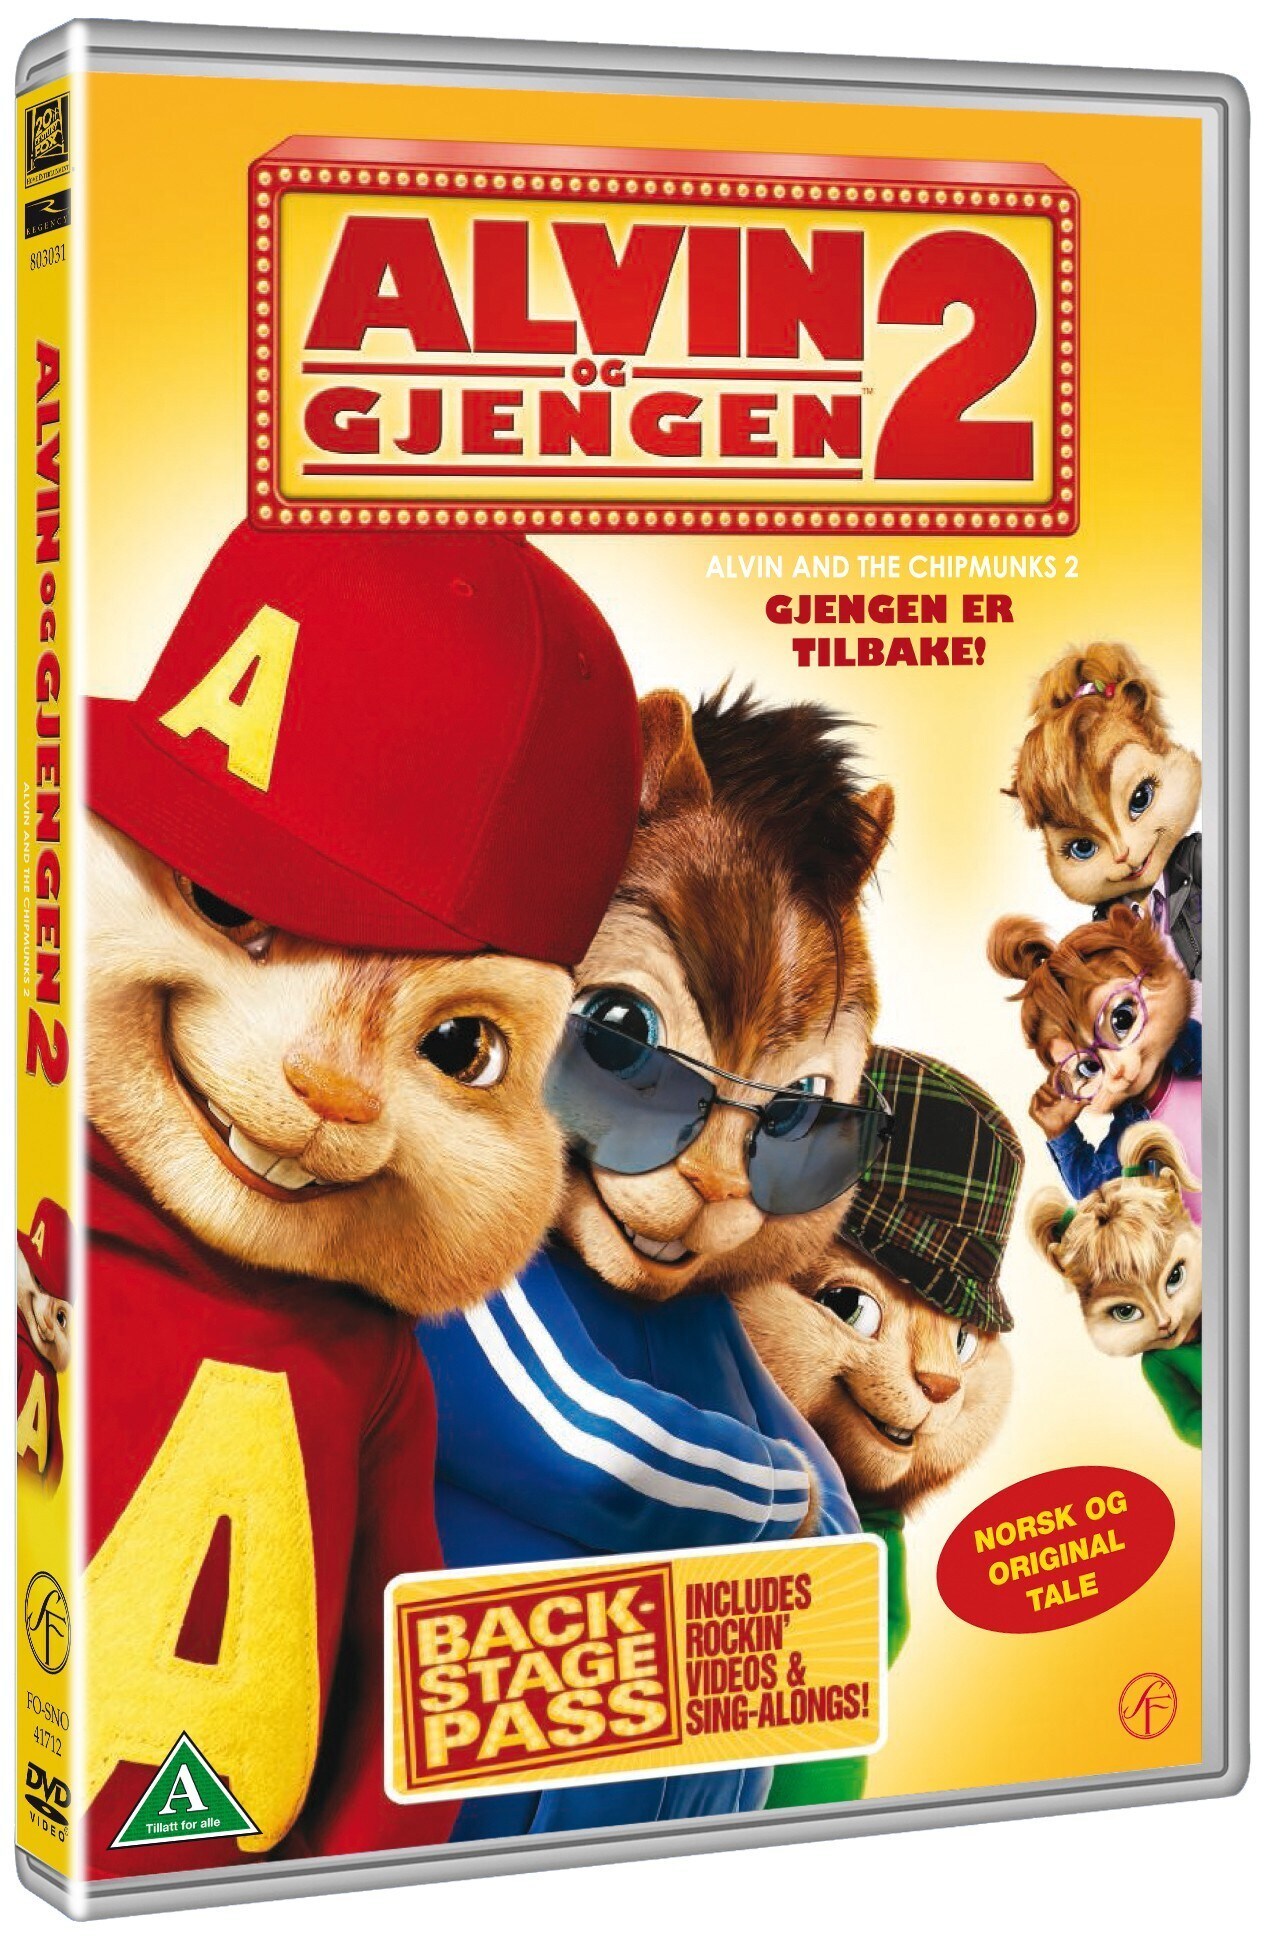 Alvin och Gänget 2 (DVD) - Elgiganten